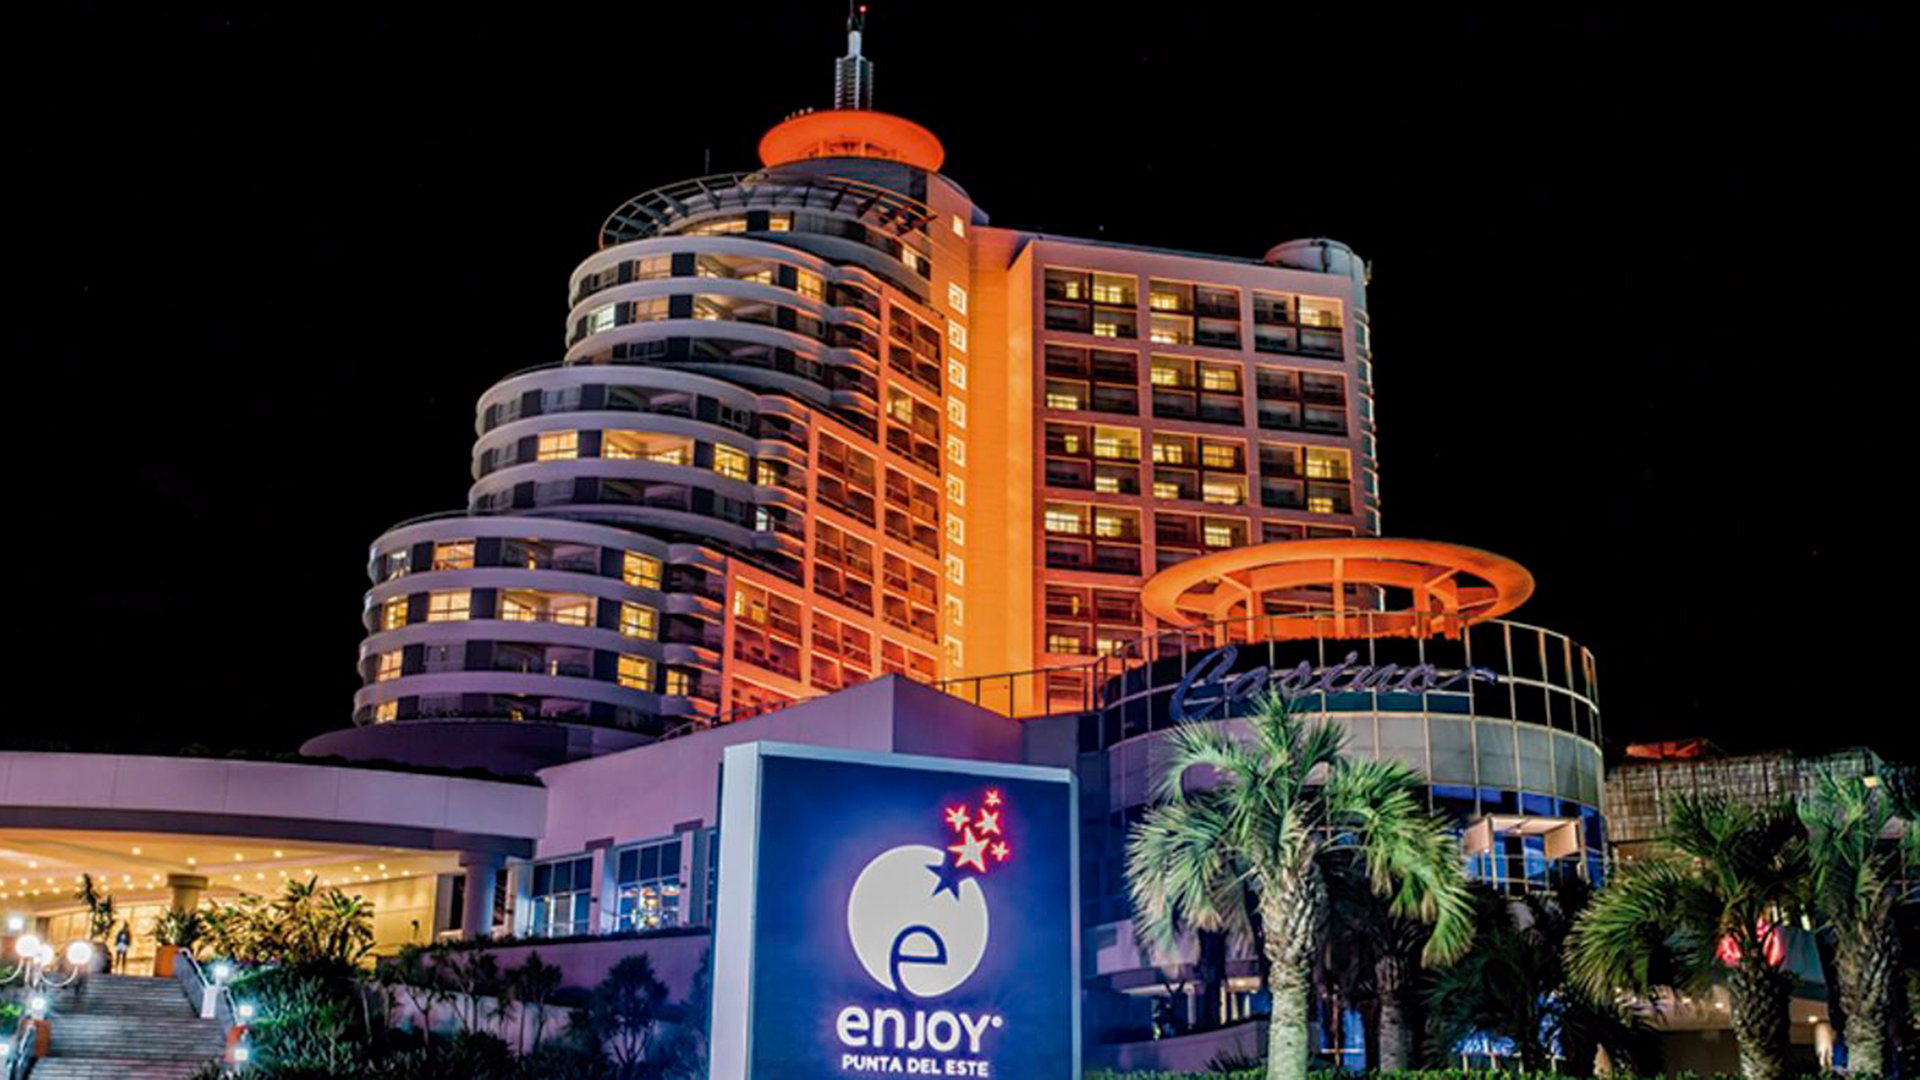 El hotel, que comenzó a operar en el año 1997, cuenta con 294 habitaciones, todas con vista al mar, entre las que se incluyen 41 lujosas suites. Por su parte, el casino ocupa un área de 4.000 metros cuadrados, donde se distribuyen 550 slots, 75 mesas y una sala de póker